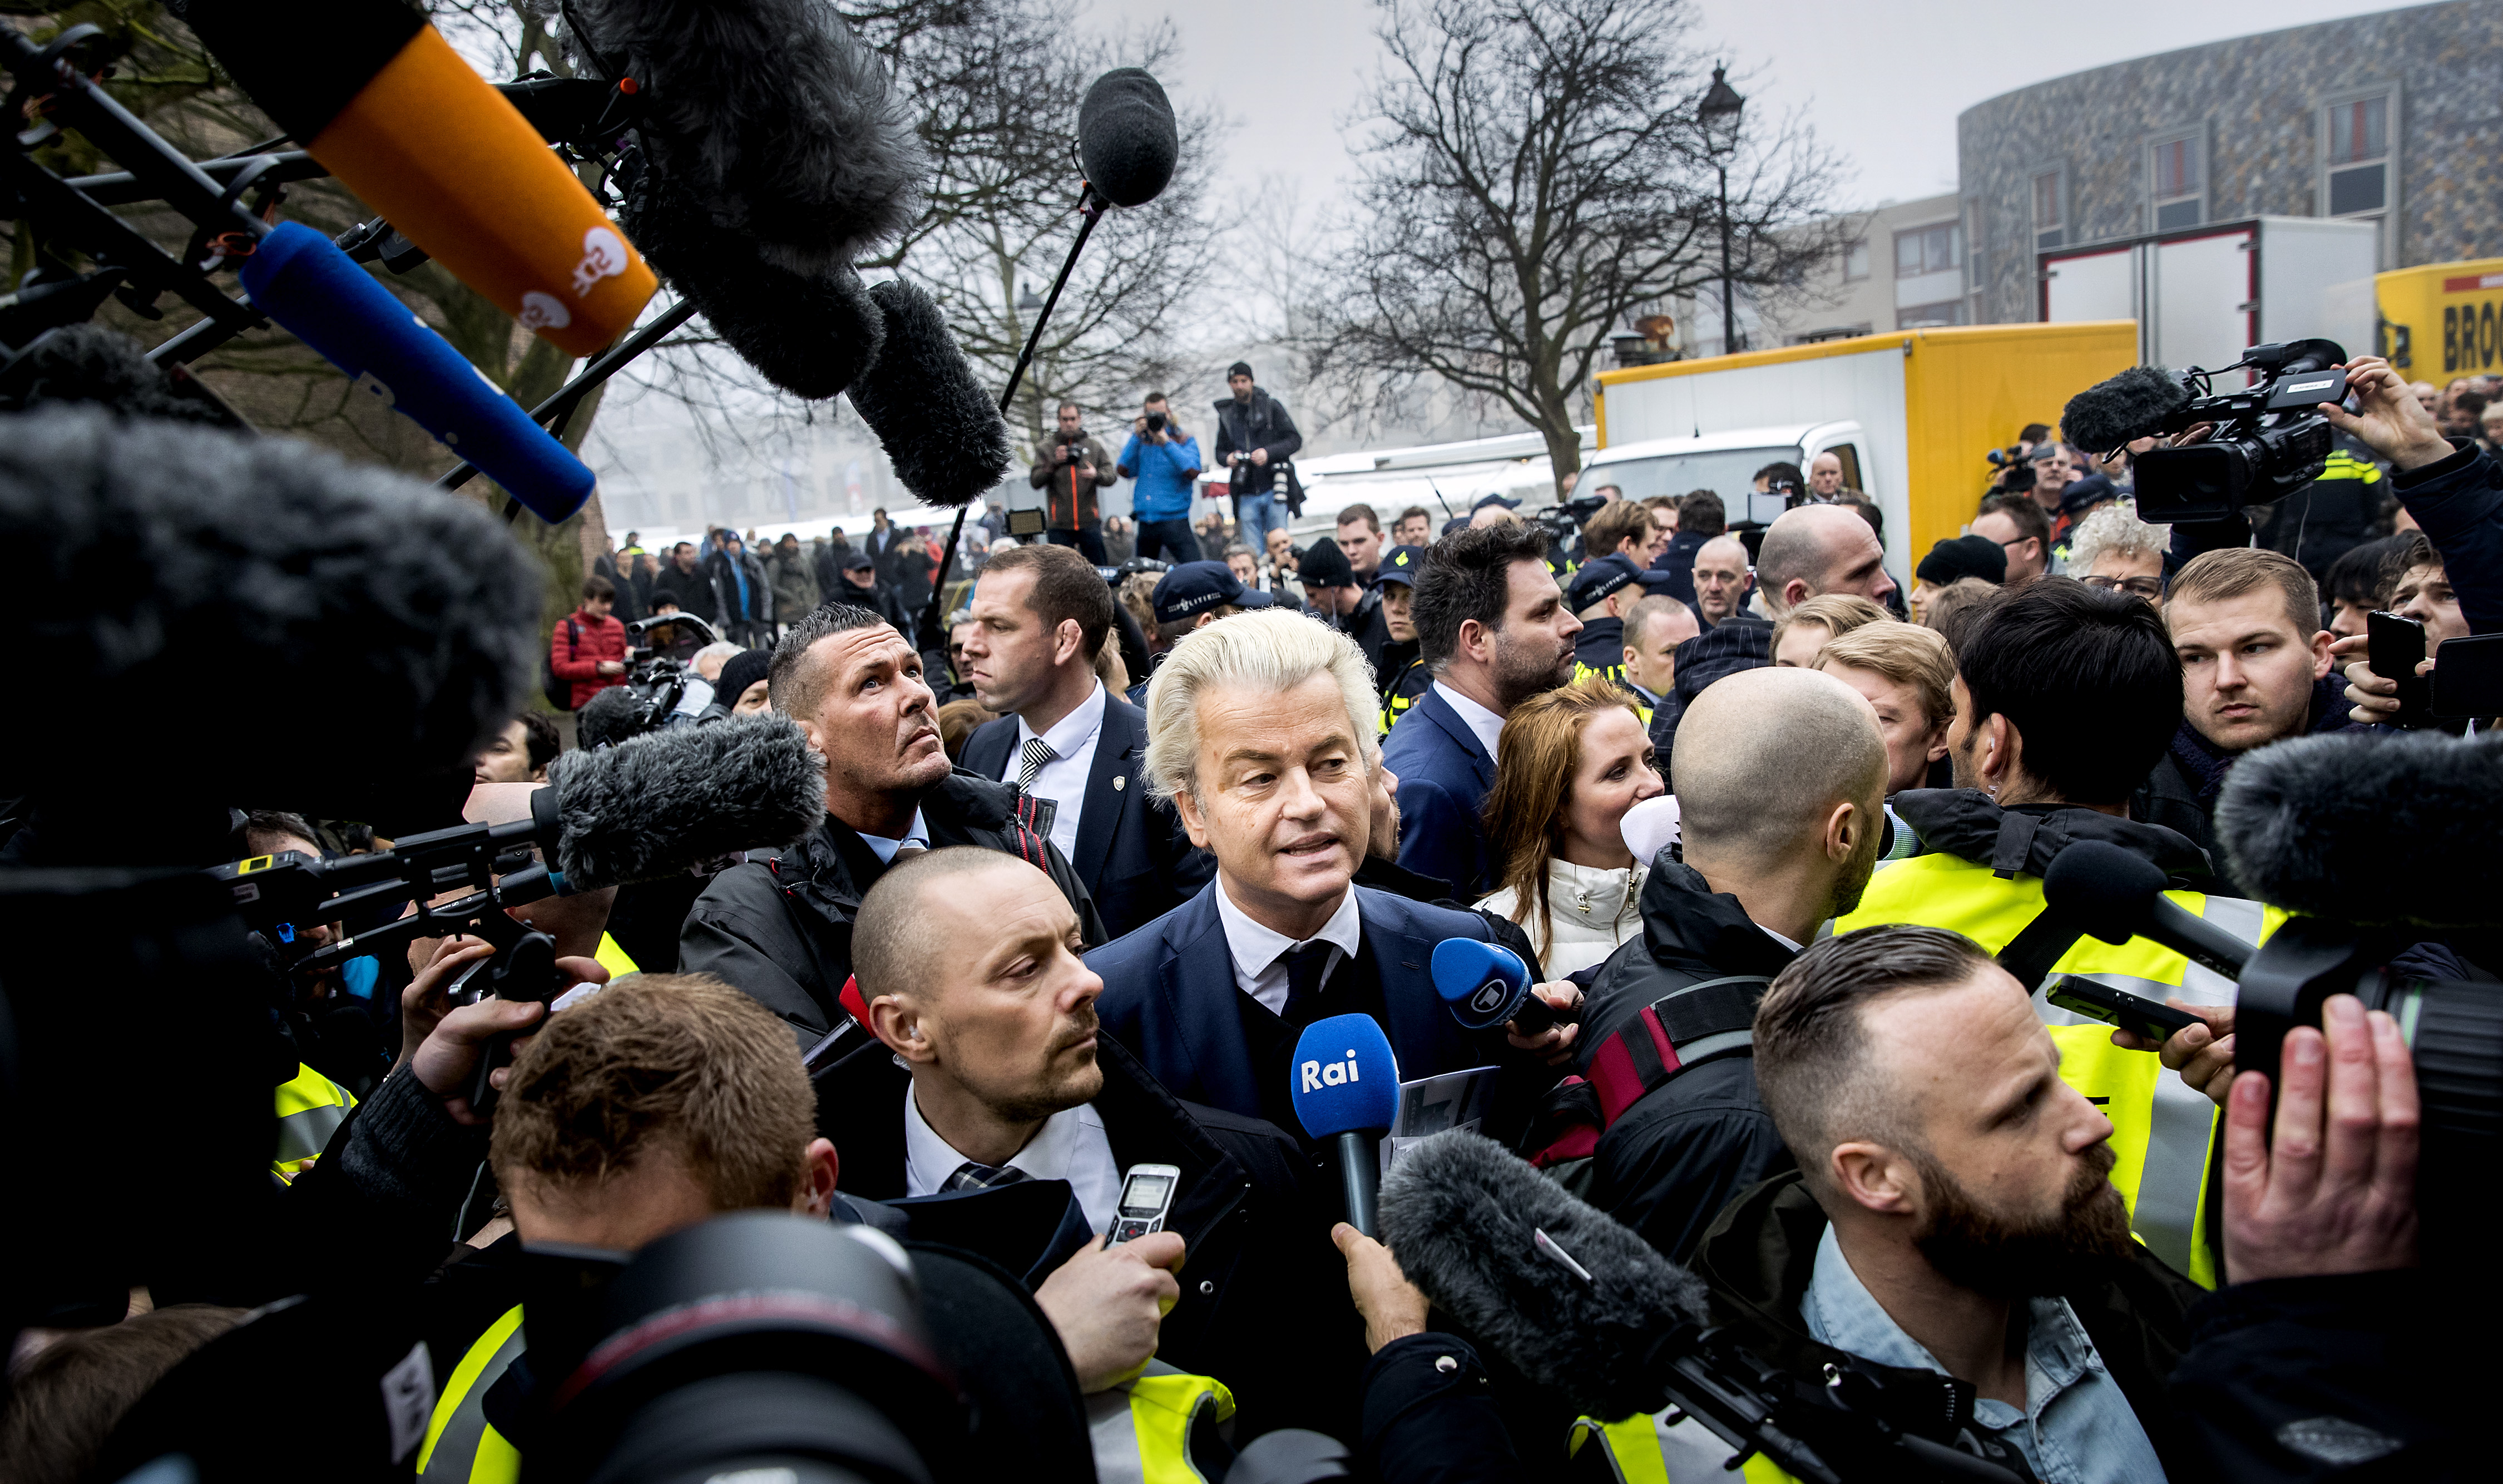 2017-02-18 12:06:25 SPIJKENISSE - Media verdringen zich rond PVV-leider Geert Wilders die flyers uitdeelt in het centrum van Spijkenisse. De Partij voor de Vrijheid trapt hier de campagne voor de Tweede Kamerverkiezingen af. ANP KOEN VAN WEEL